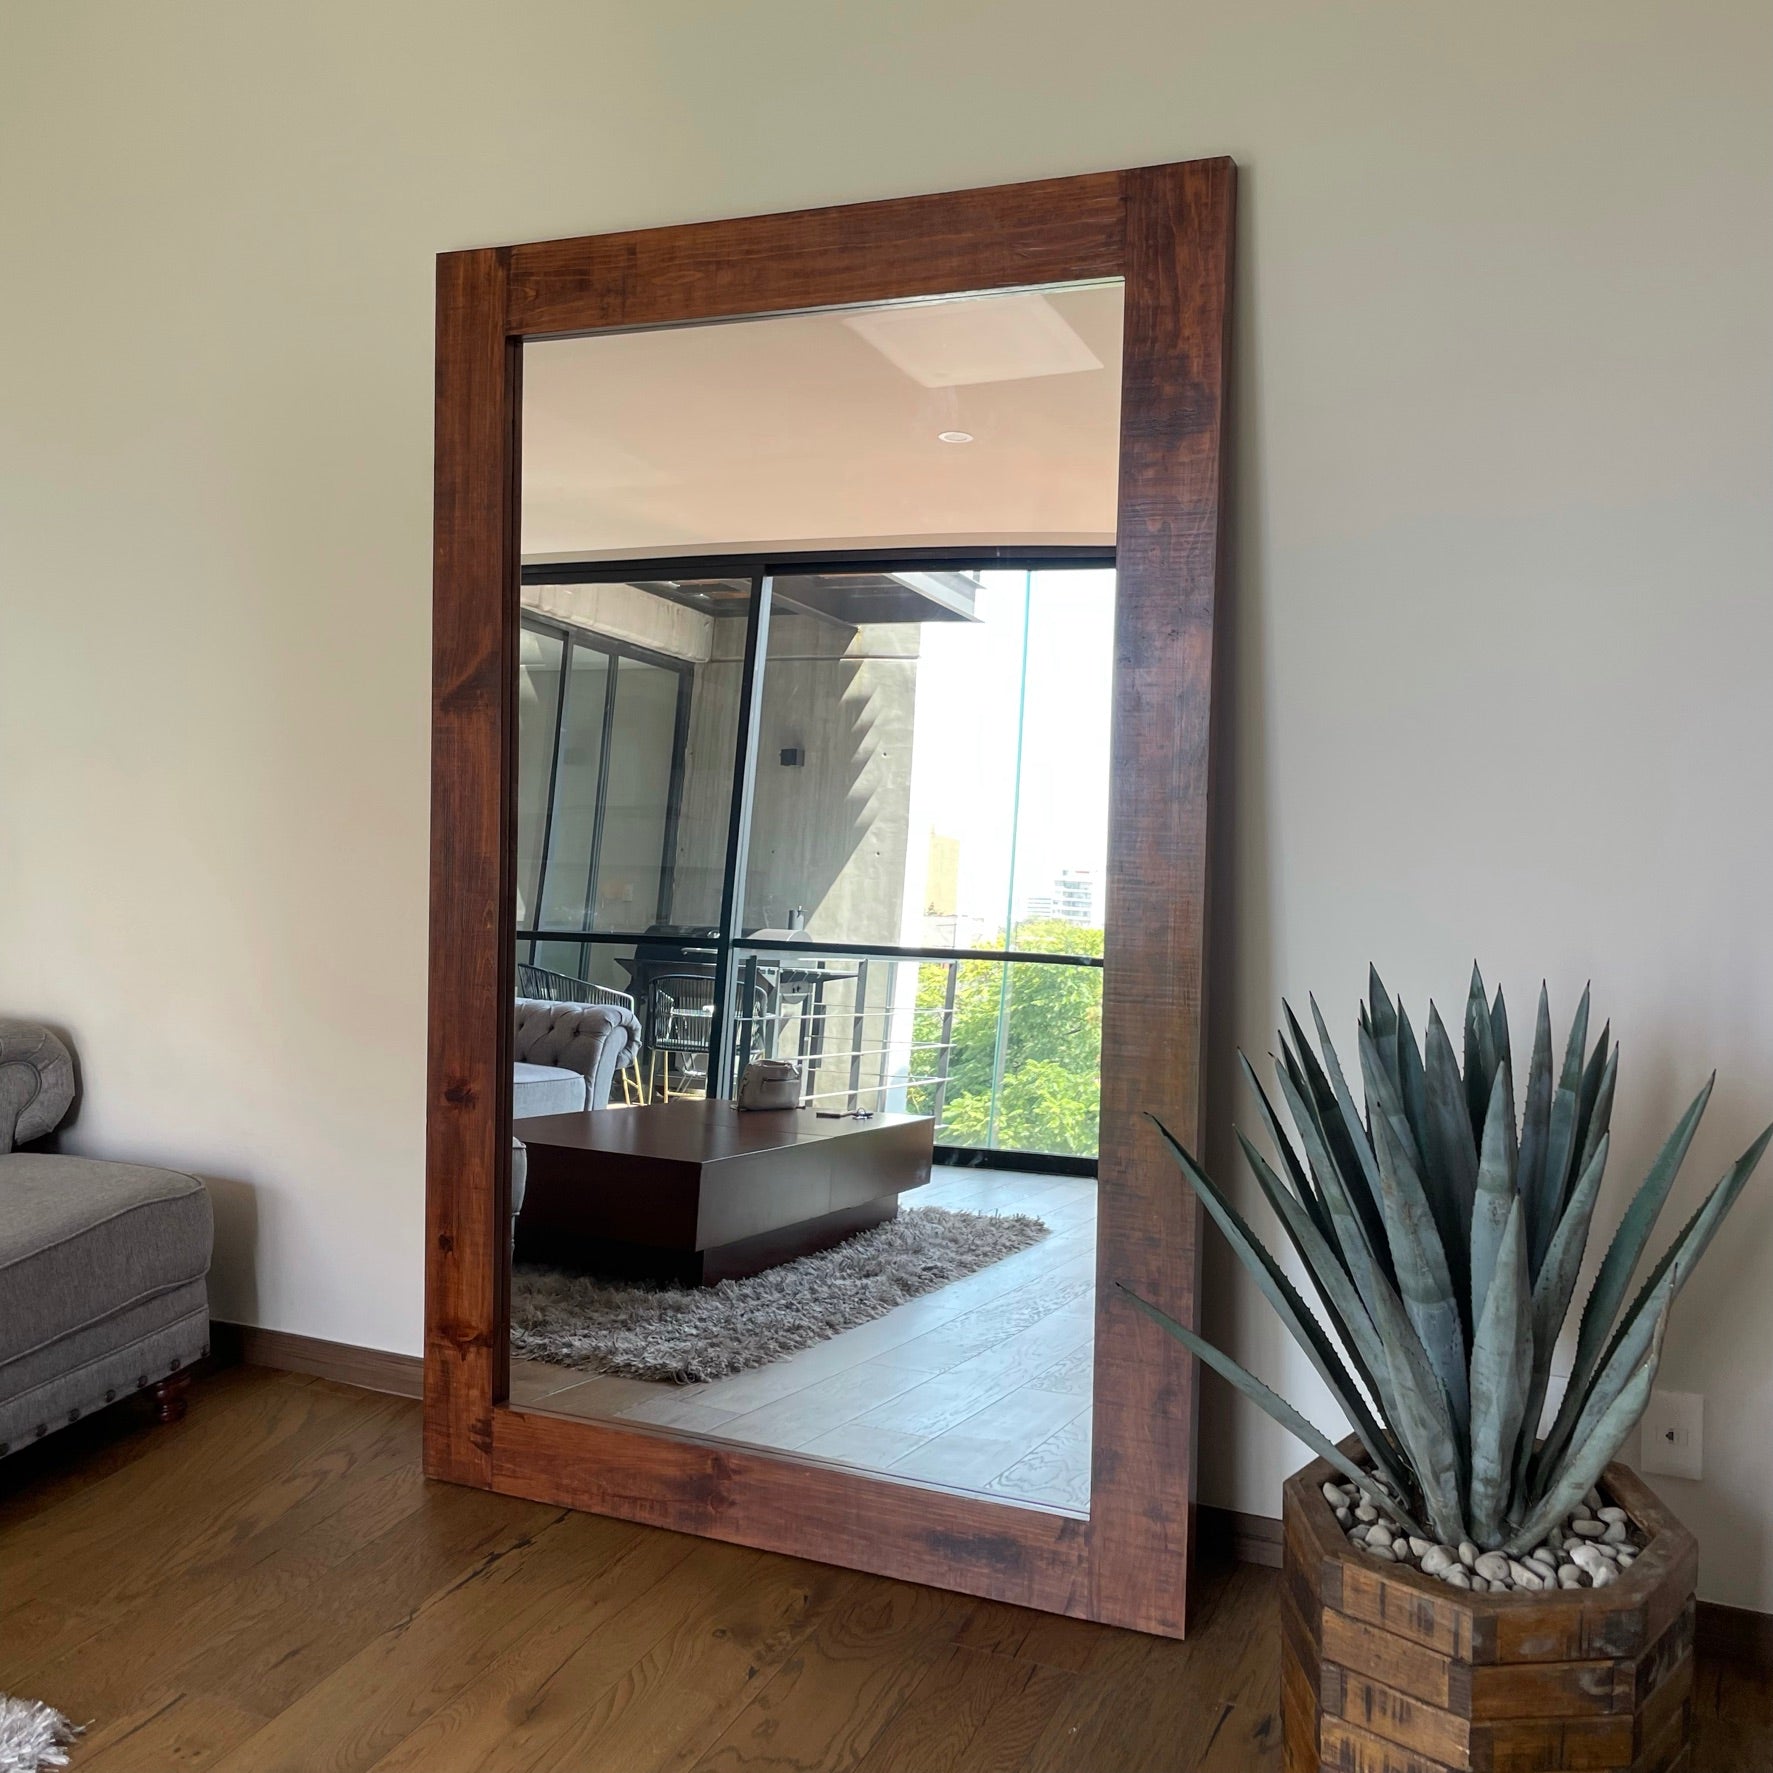 Los mejores espejos decorativos para tu hogar: redecora cualquier estancia